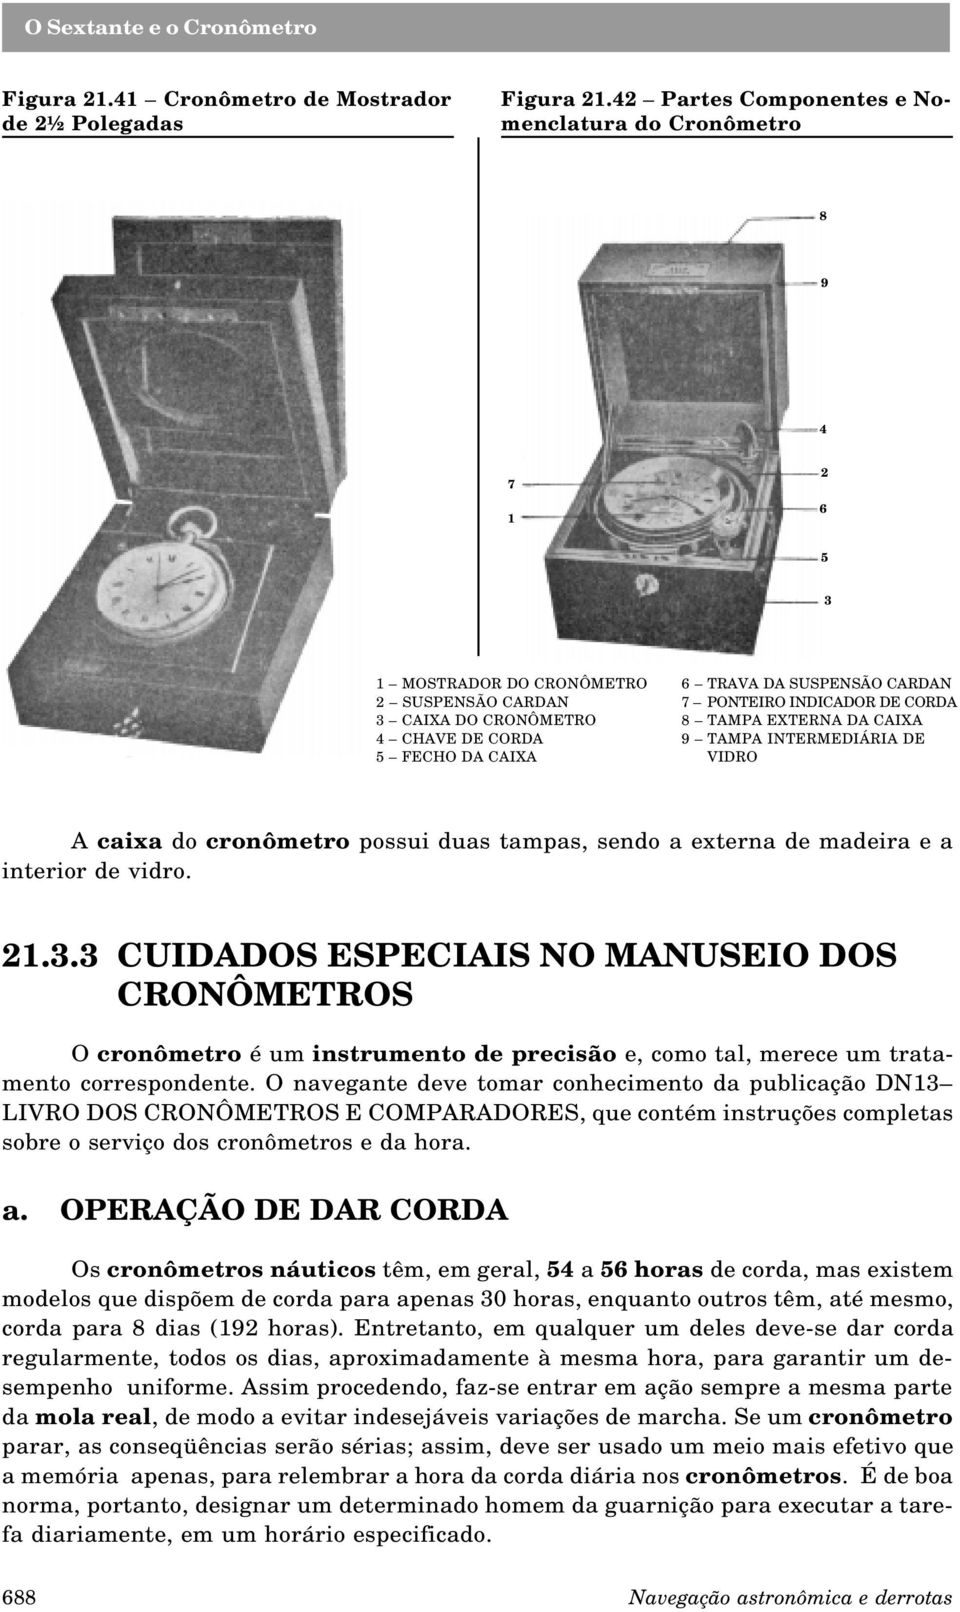 TAMPA EXTERNA DA CAIXA 4 CHAVE DE CORDA 9 TAMPA INTERMEDIÁRIA DE 5 FECHO DA CAIXA VIDRO A caixa do cronômetro possui duas tampas, sendo a externa de madeira e a interior de vidro. 21.3.